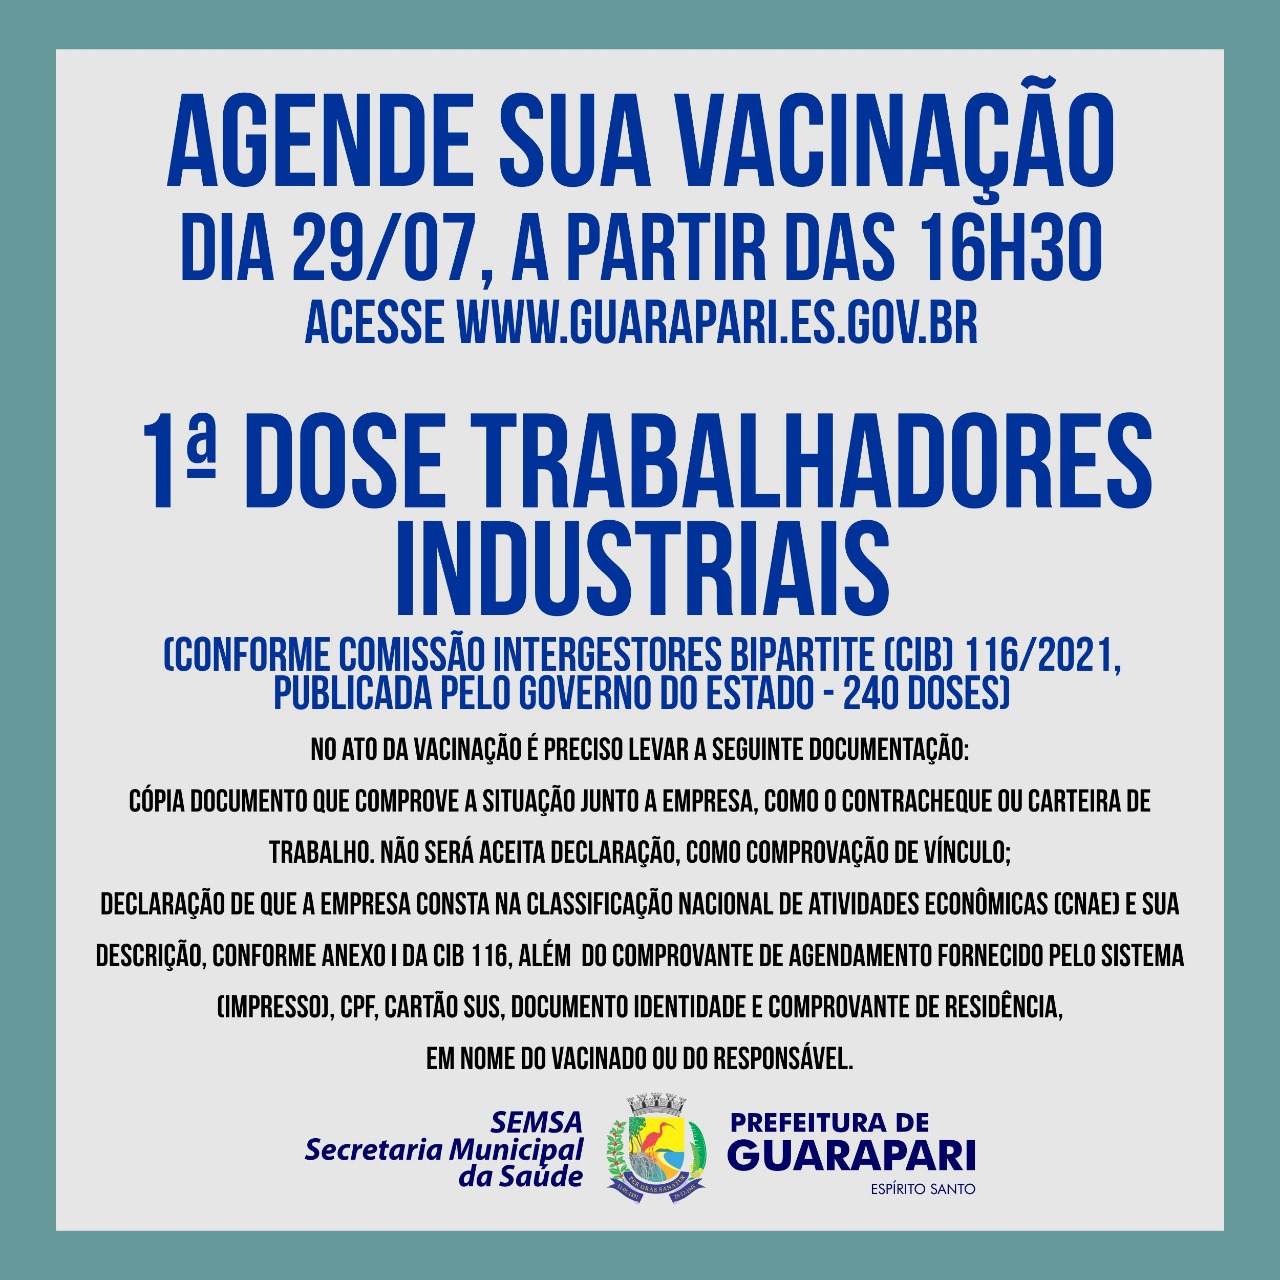 Covid-19: Prefeitura de Guarapari abre agendamento para vacinação de trabalhadores industriais 